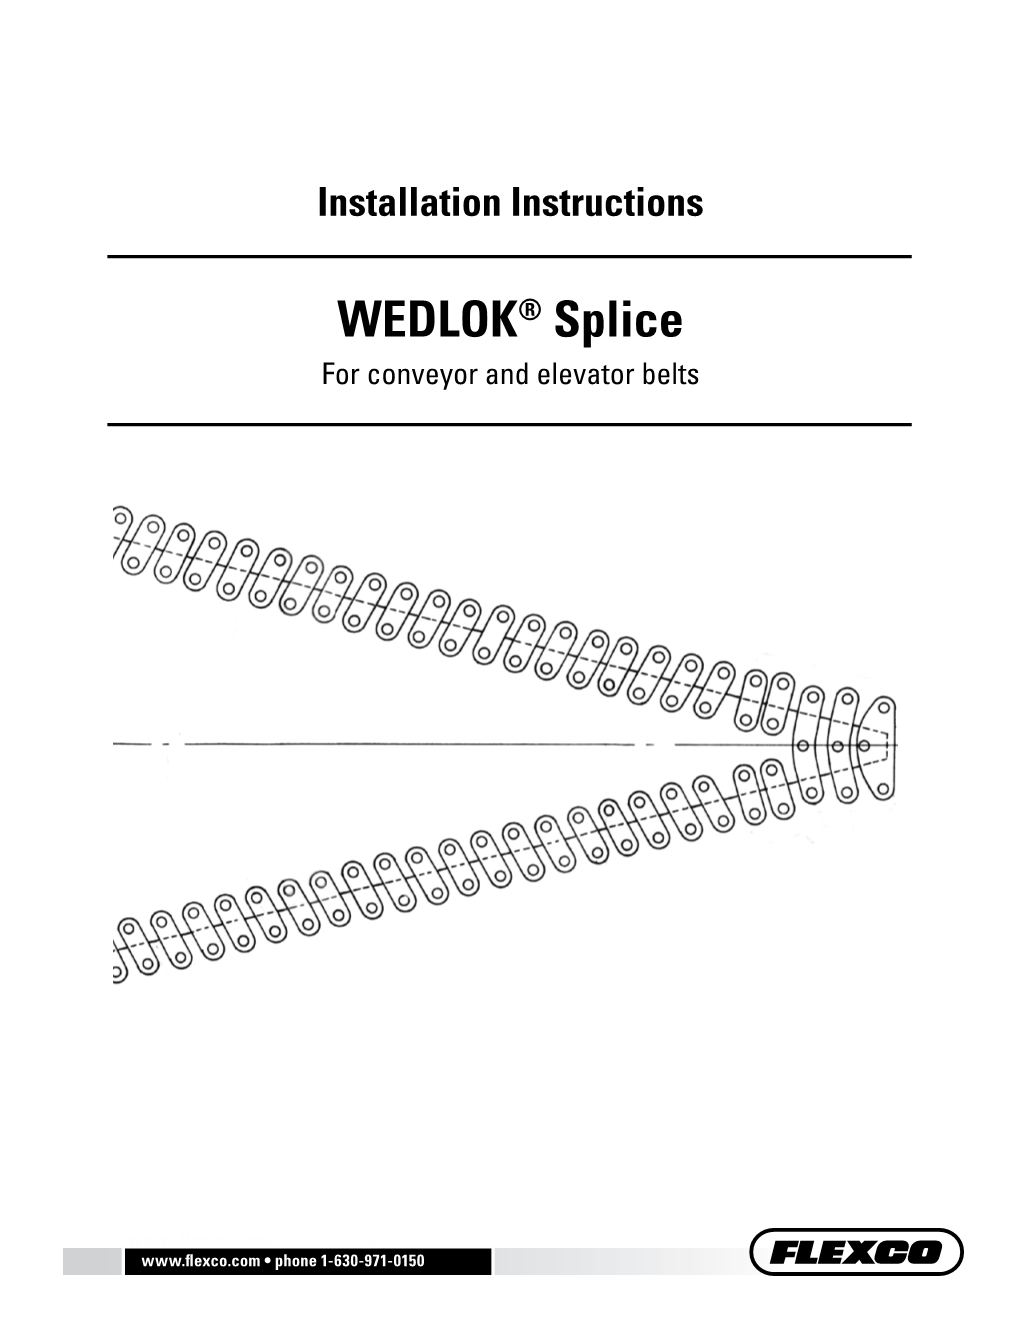 WEDLOK® Splice for Conveyor and Elevator Belts